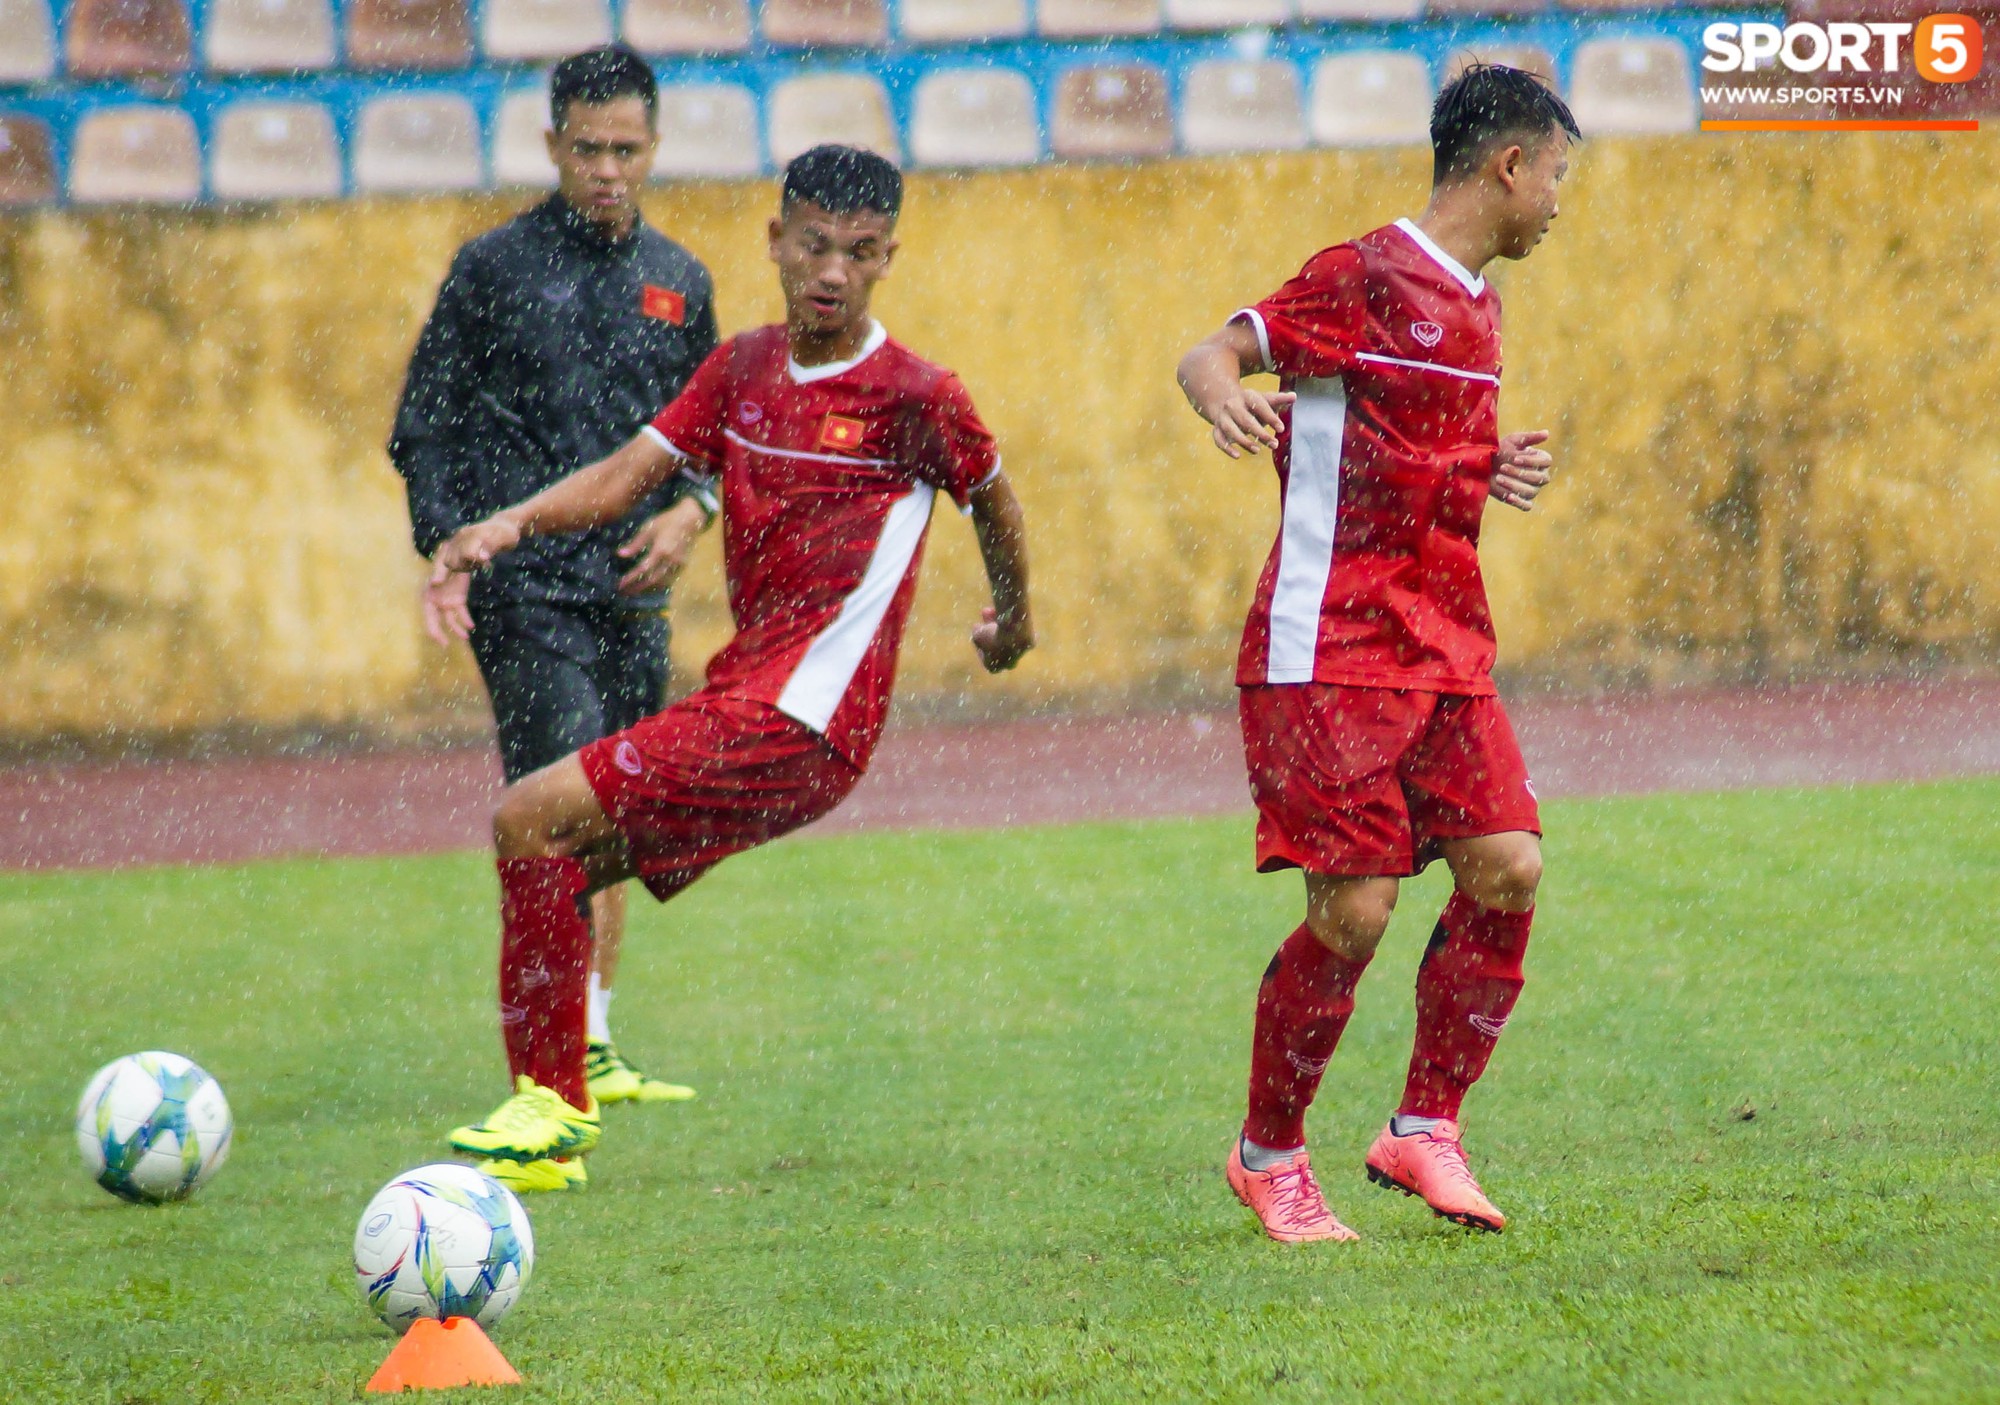 U16 Việt Nam cầm hoà đàn anh U19 1-1 dưới trời mưa tại Nam Định - Ảnh 2.